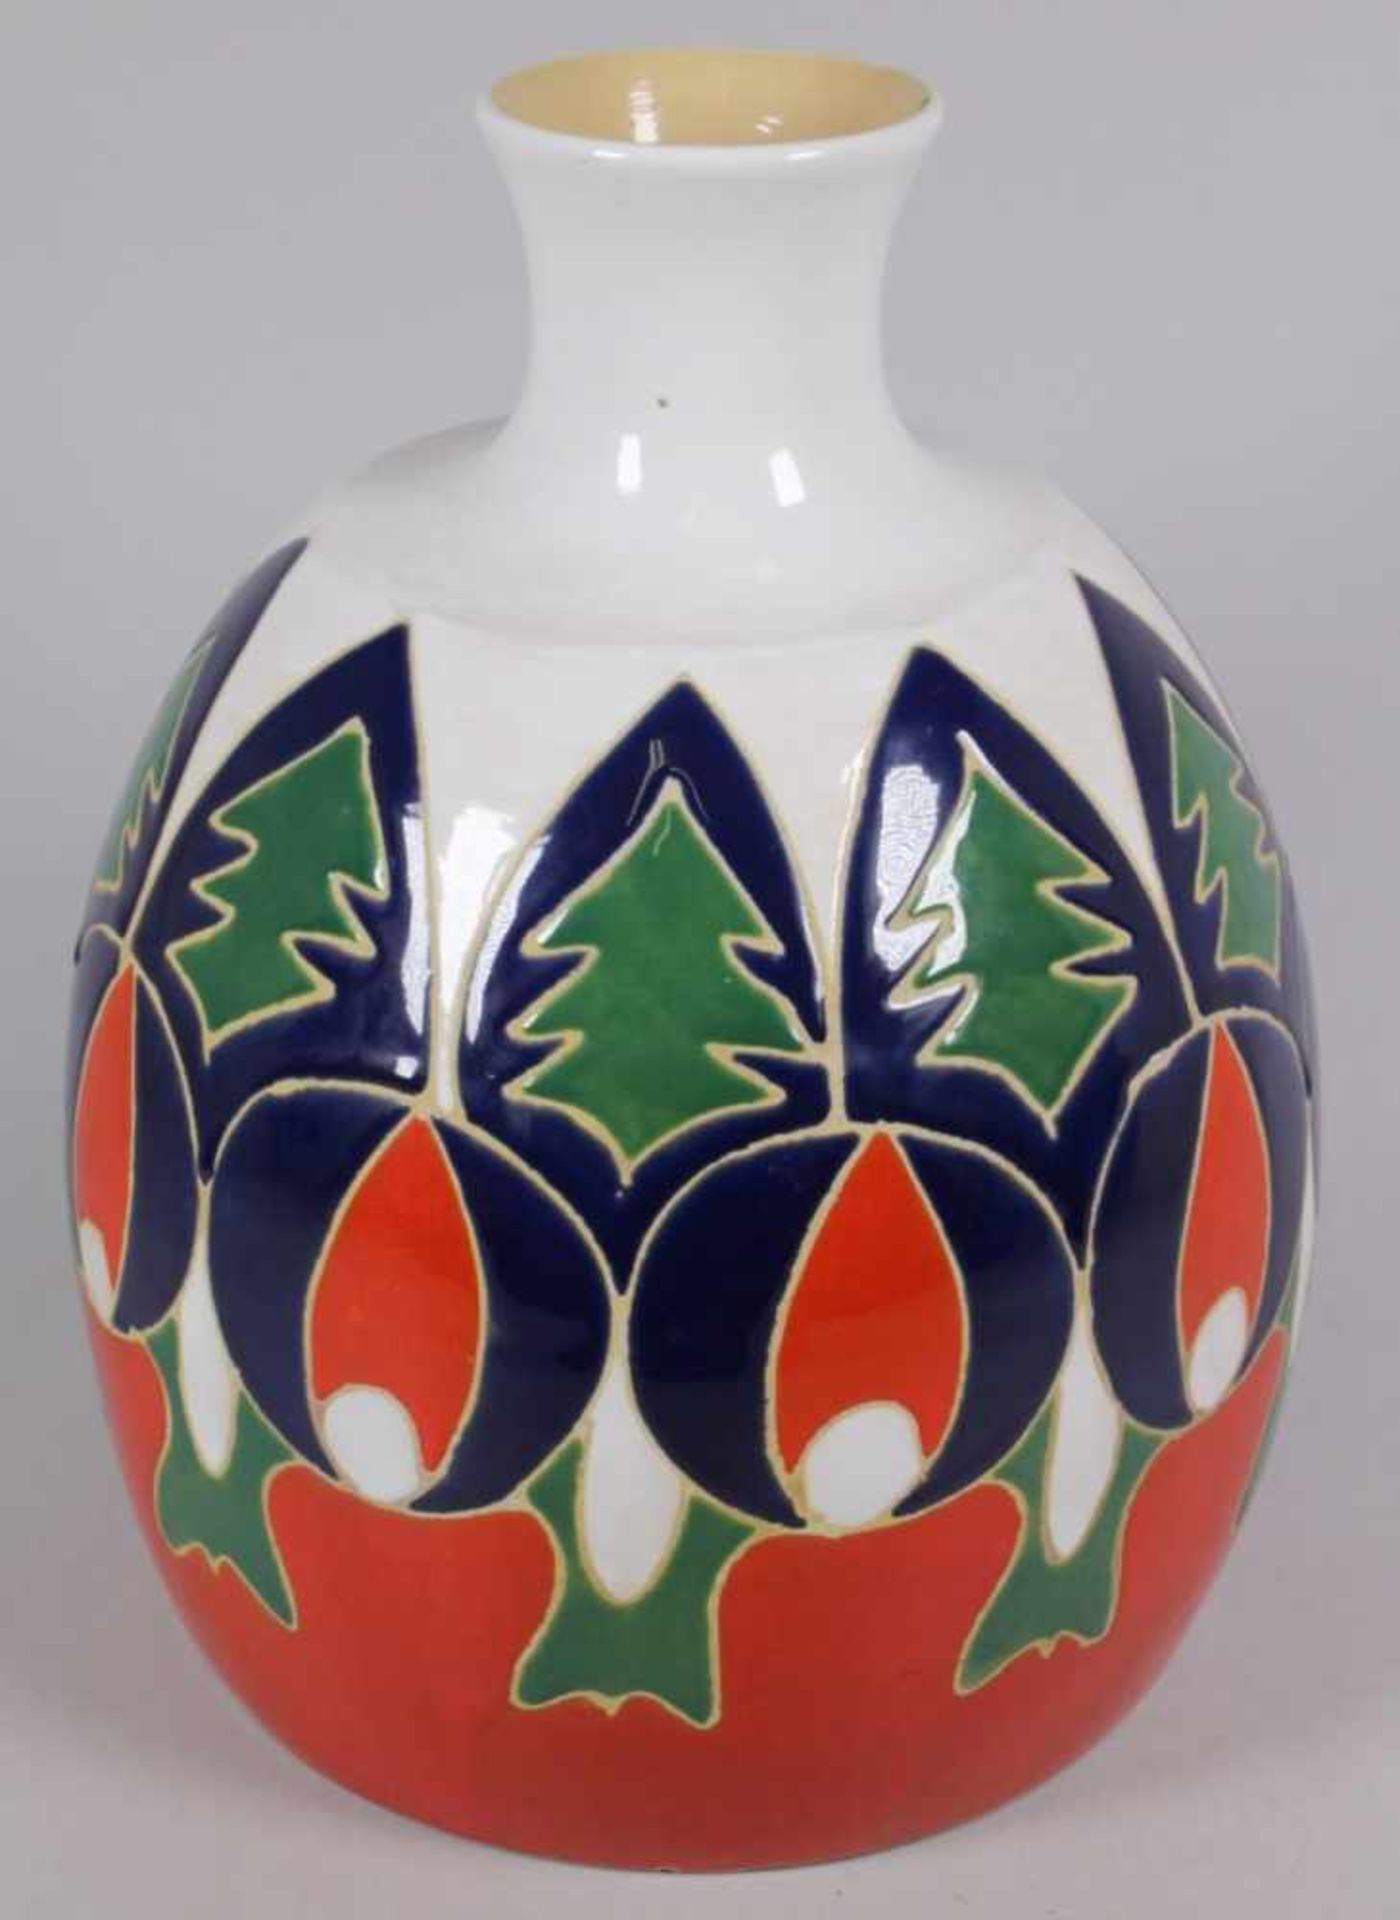 Keramik-Ziervase, Italien, 70er Jahre, runder Stand, bauchiger Korpus, abgesetzter,eingezogener Hals - Bild 2 aus 5